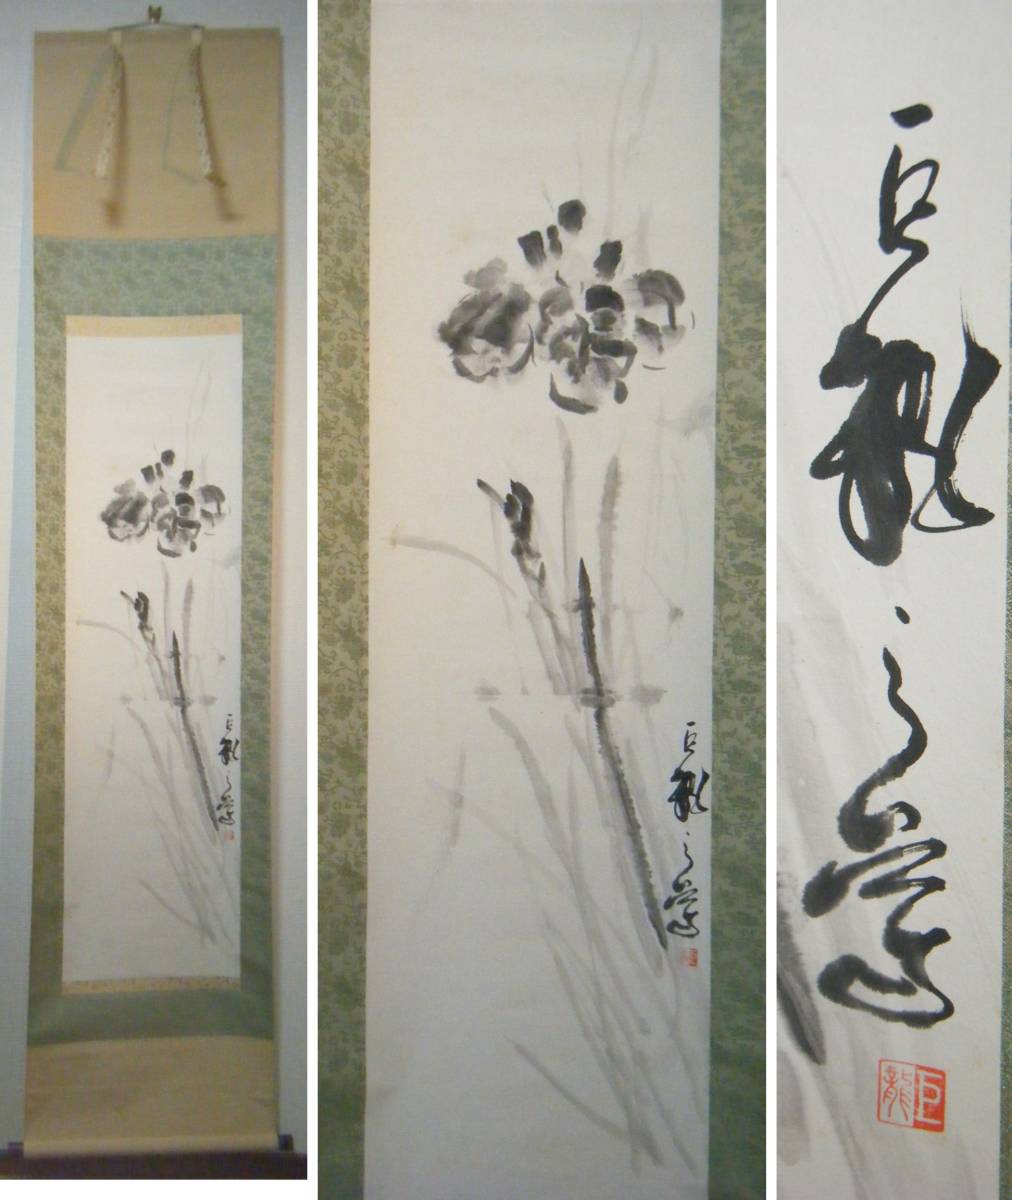 [प्रामाणिक] एक विशाल ड्रैगन और एक फूल आकृति के साथ लटकता हुआ स्क्रॉल, उत्कृष्ट कृति L153, चित्रकारी, जापानी चित्रकला, फूल और पक्षी, वन्यजीव